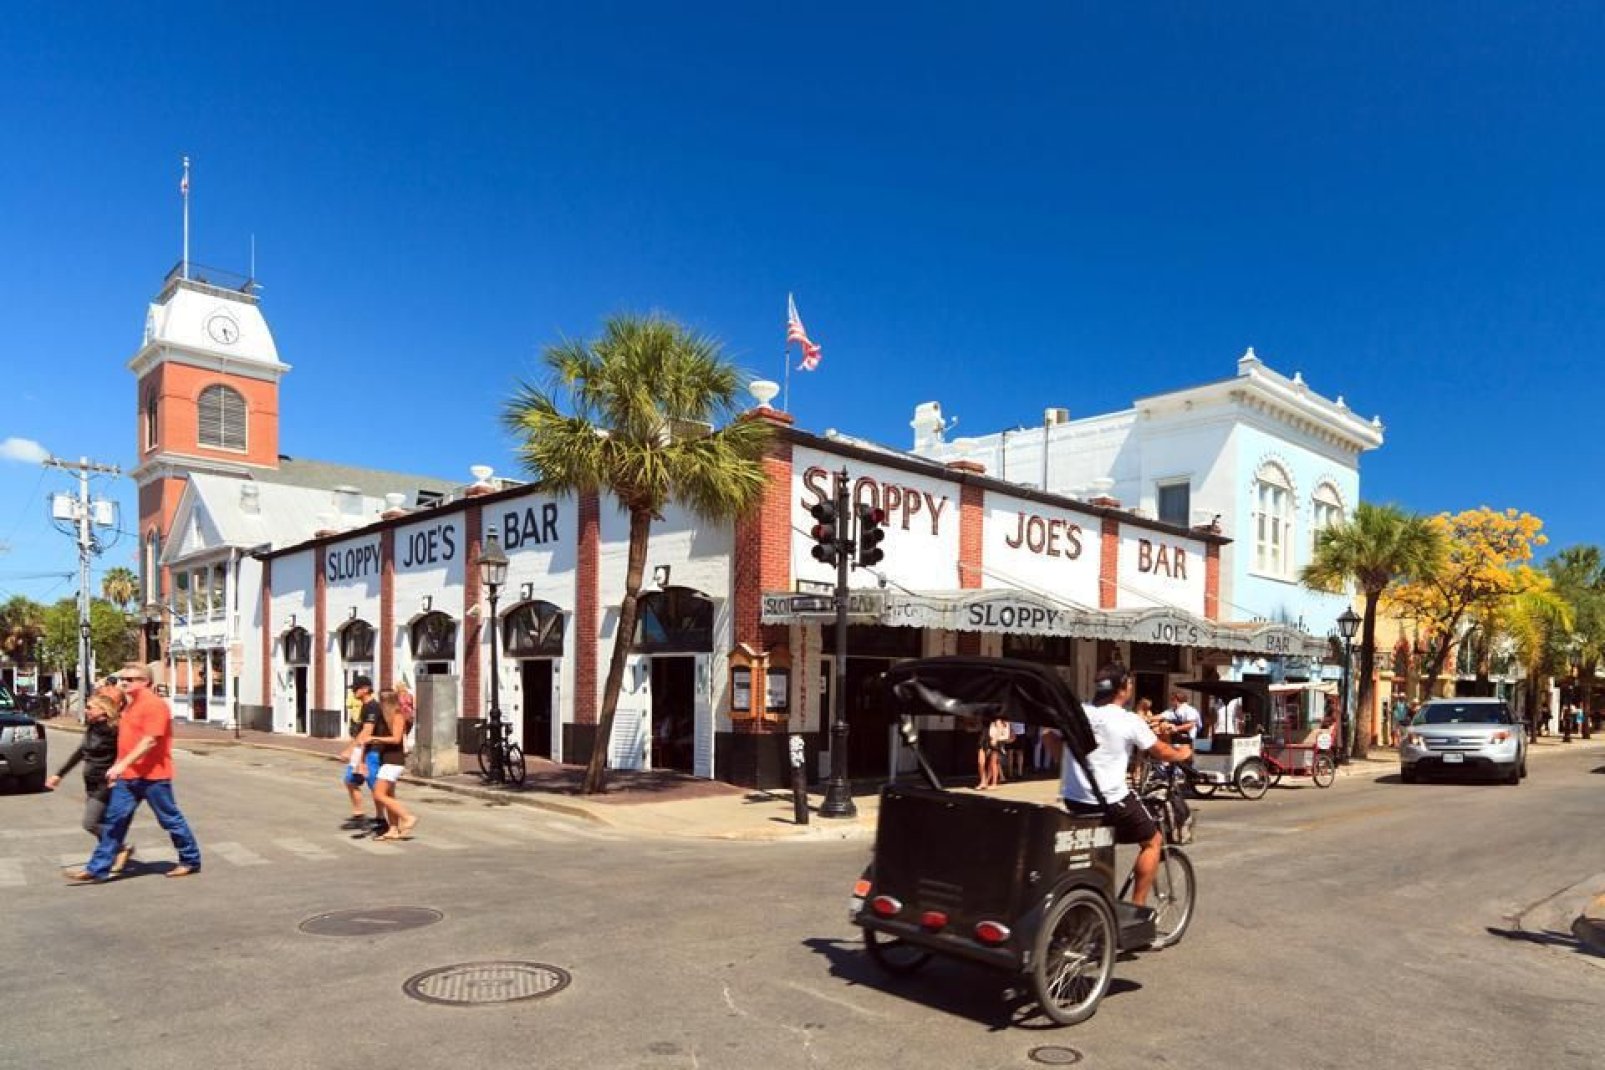 Die Bar Sloppy Joe in Key West ist berühmt, hier kann man beim Essen gute Musik hören. Kleidung und Souvenirs werden vor Ort verkauft.